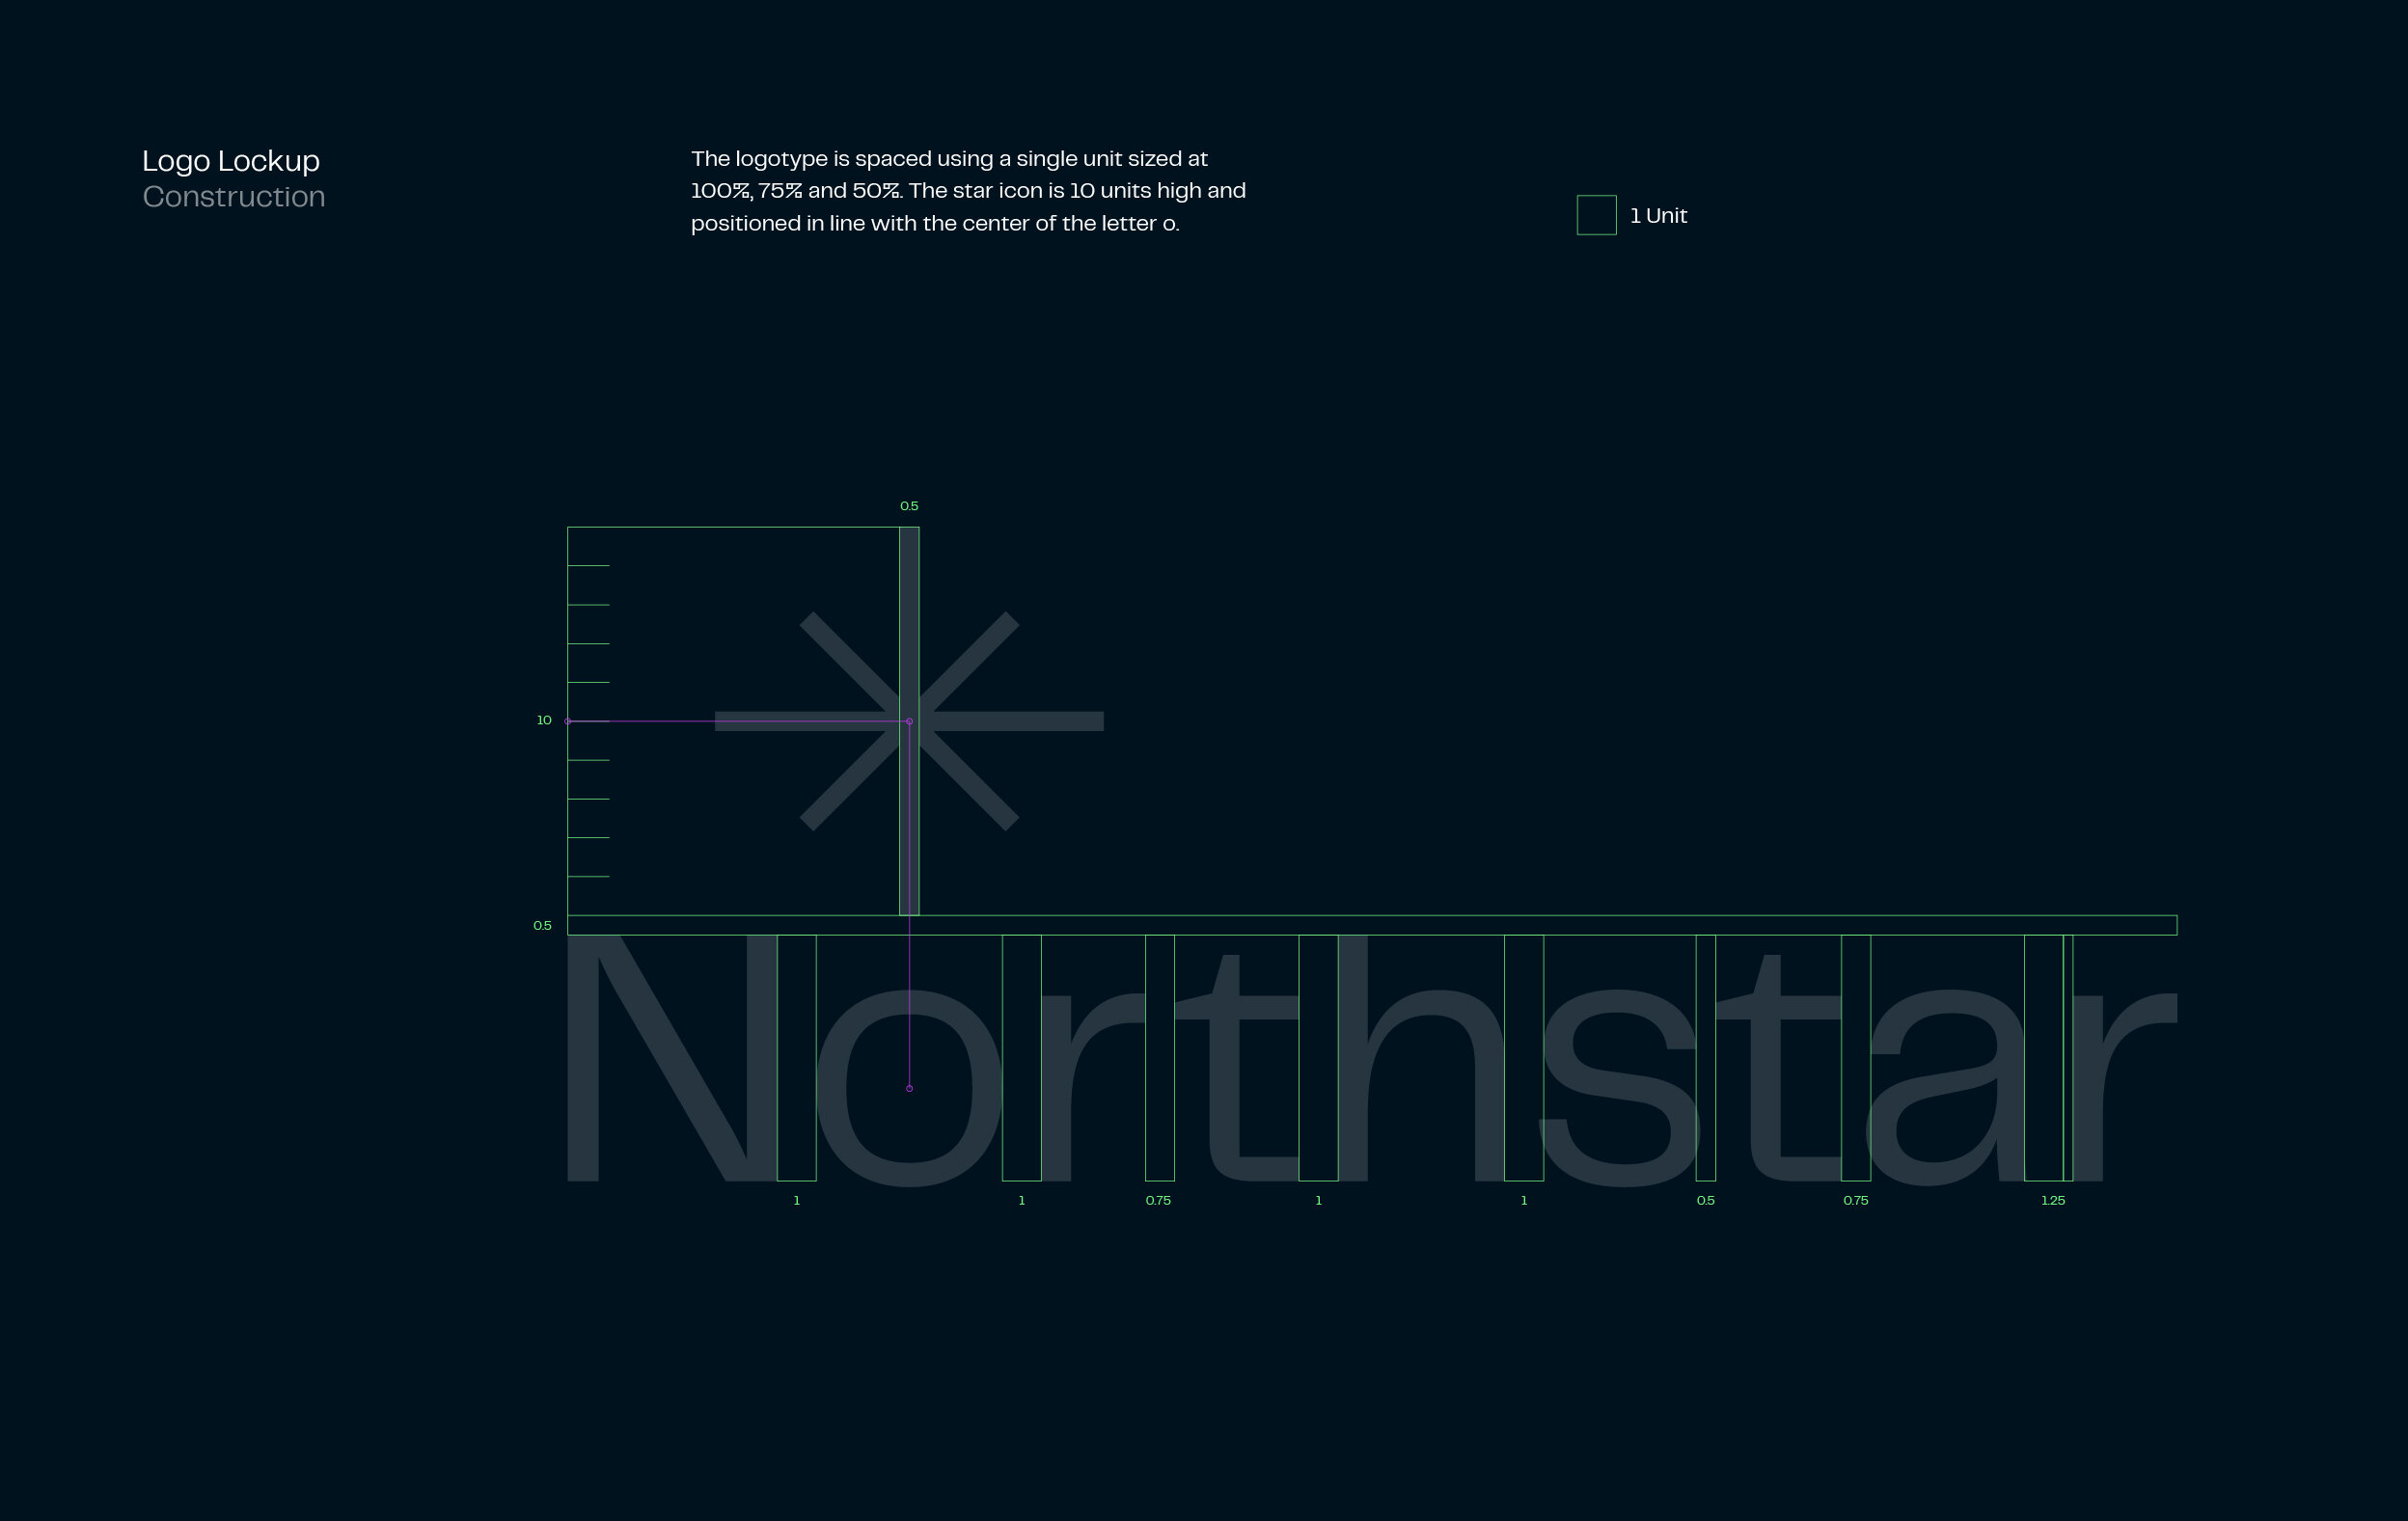 Northstar_Logo lockup.jpg